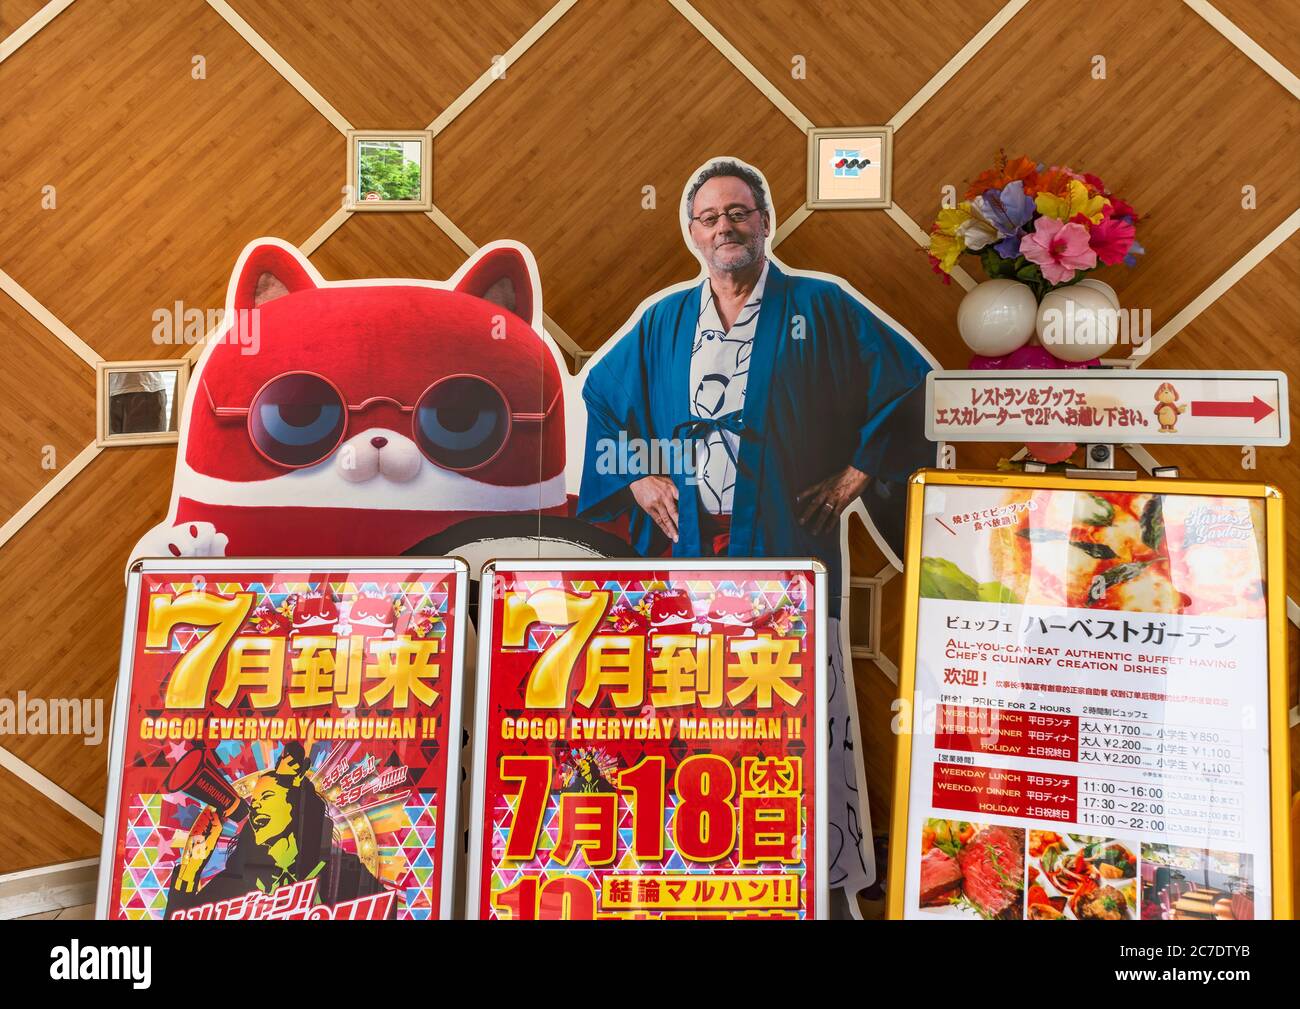 chiba, giappone - luglio 18 2019: Pannello a grandezza naturale del famoso attore francese Jean Reno indossando un kimono giapponese all'ingresso di un gioco di pachinko Foto Stock